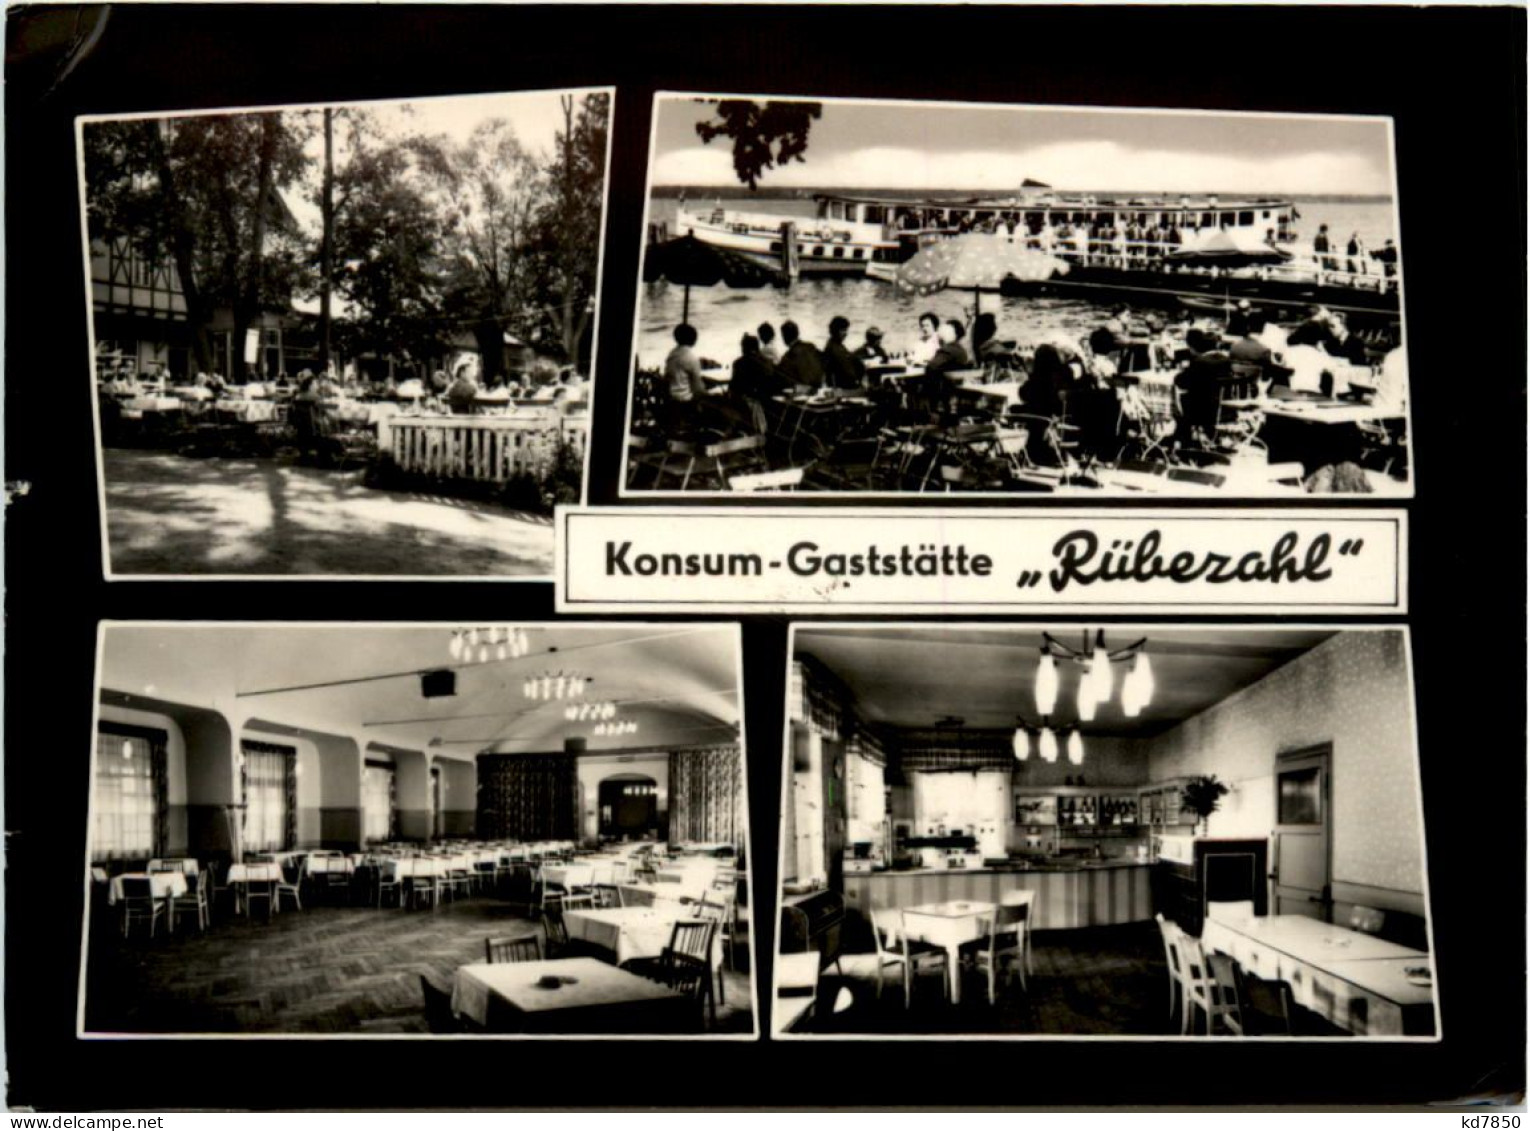 Konsum-Gaststätte Rübezahl, Div. Bilder, Berlin-Köpenick - Koepenick